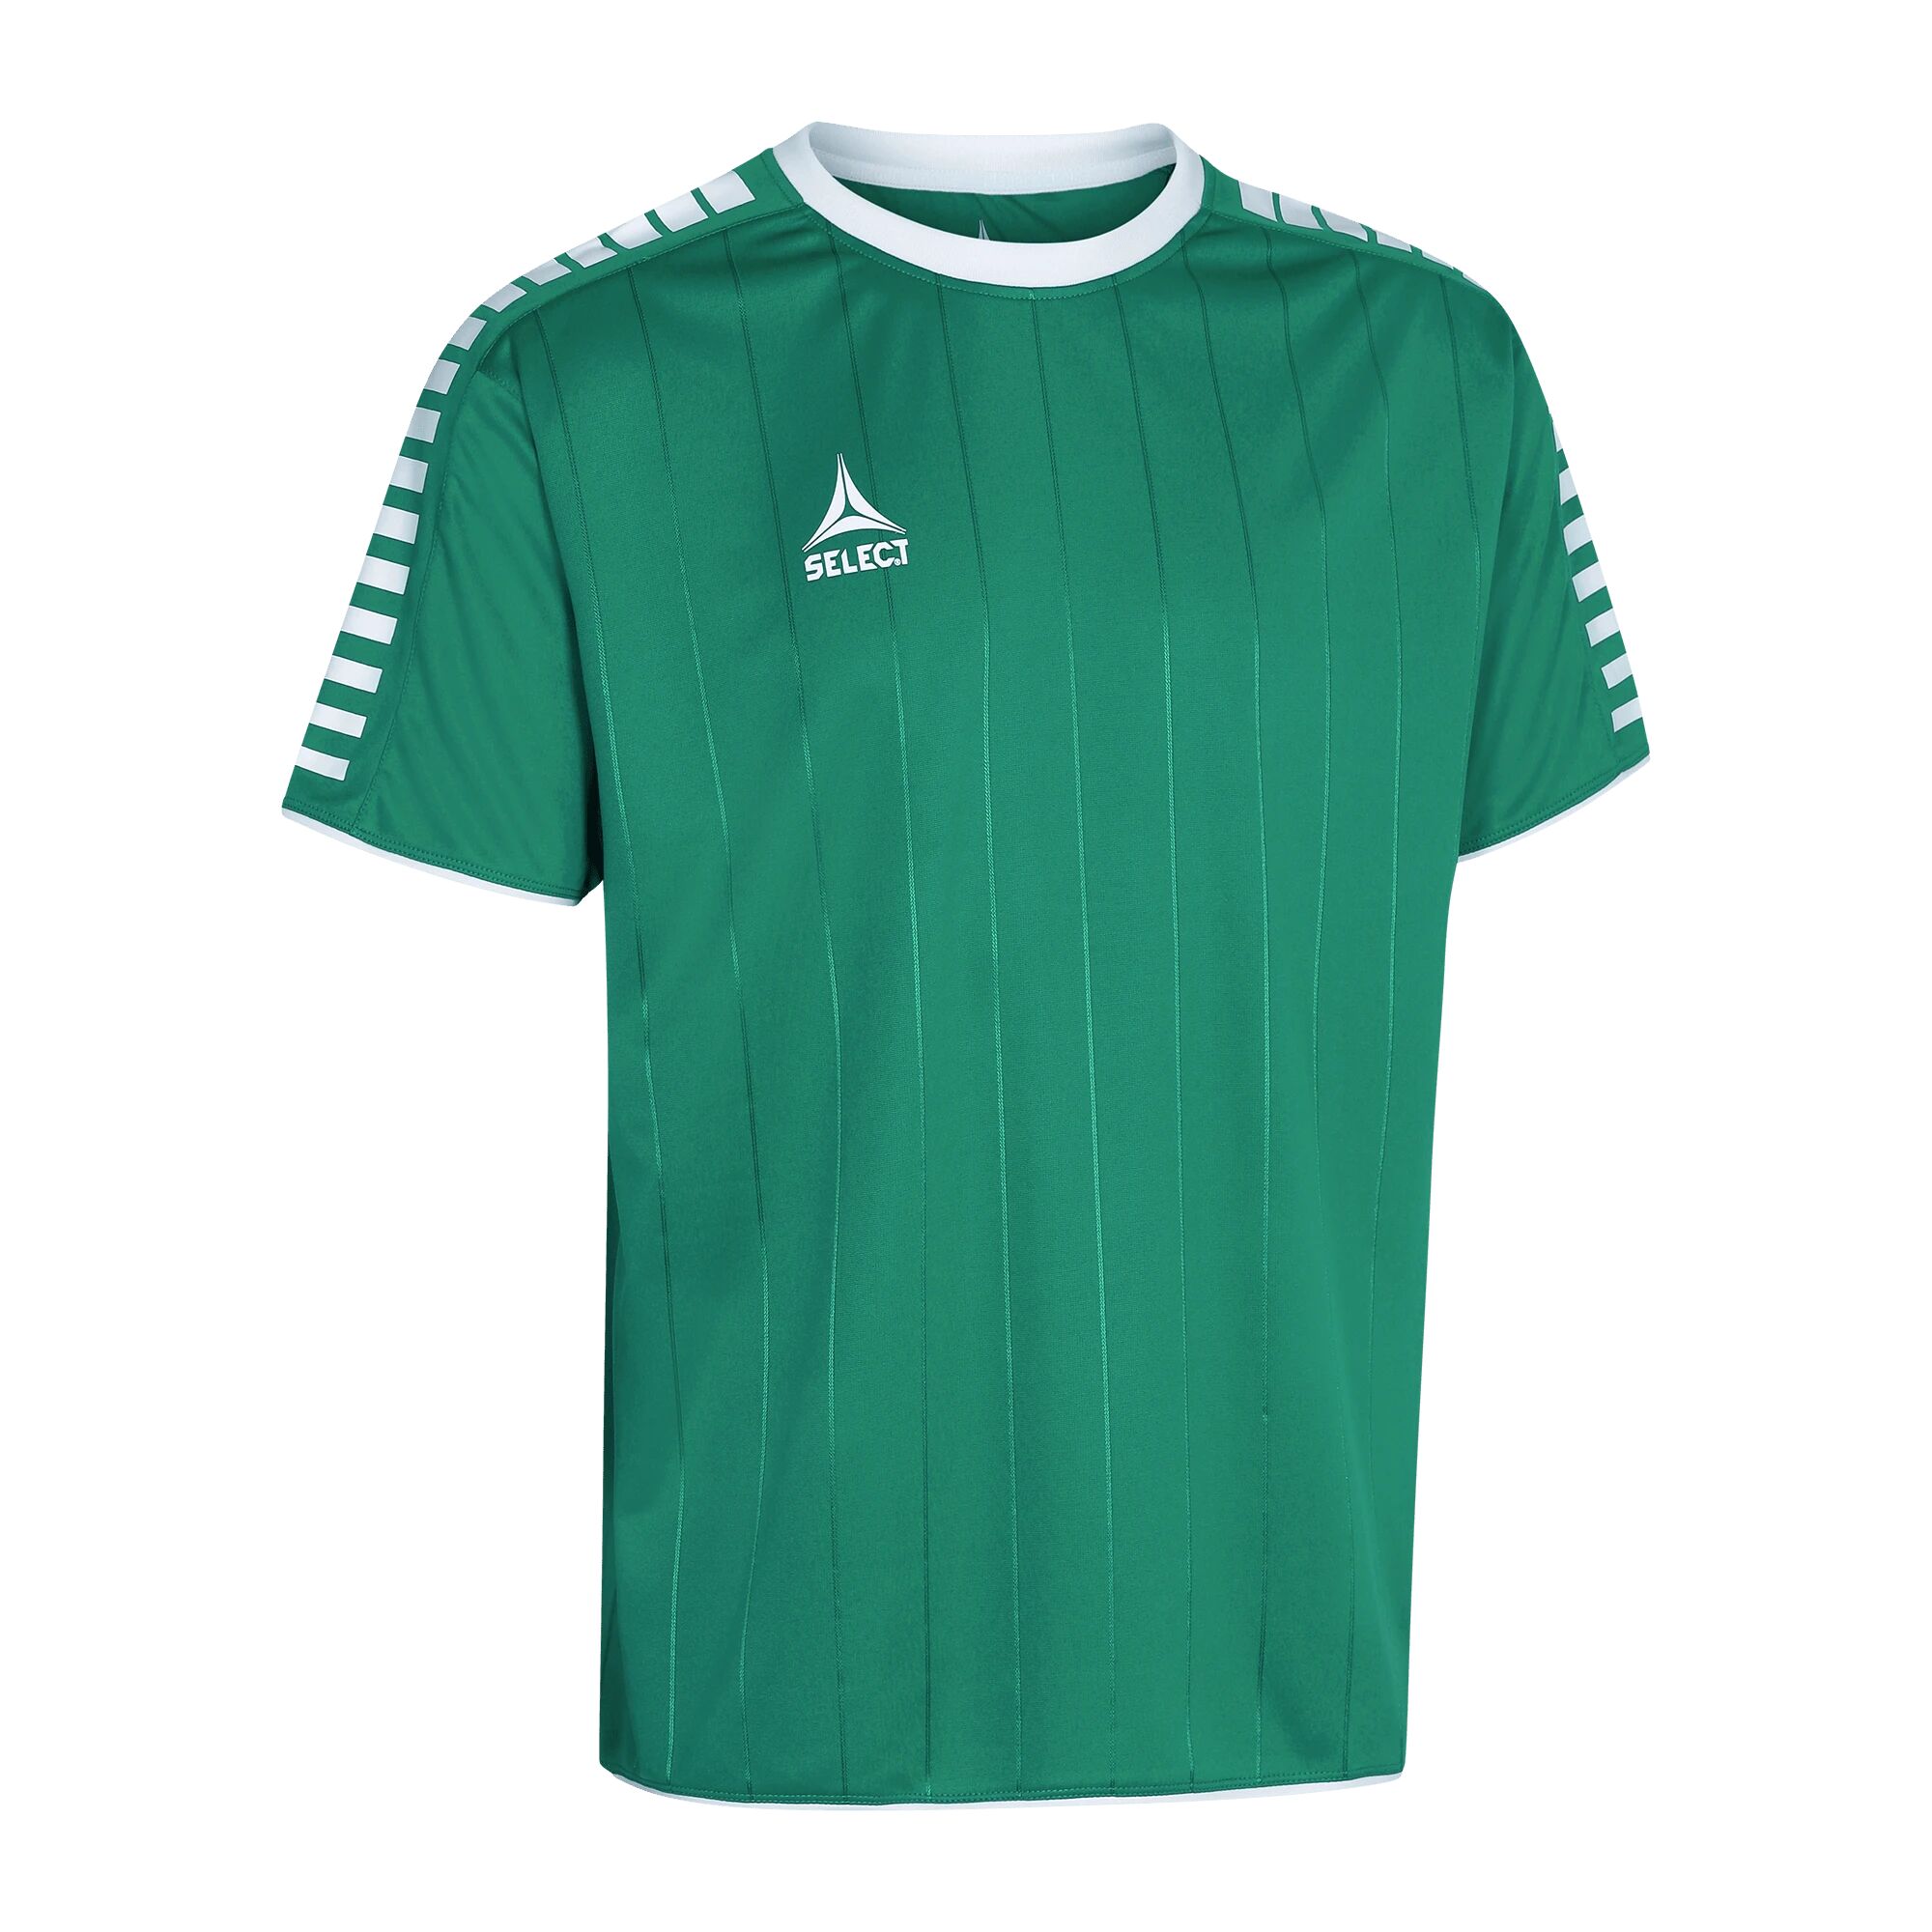 Select Player shirt S/S Argentina, fotballtrøye senior 152 Green